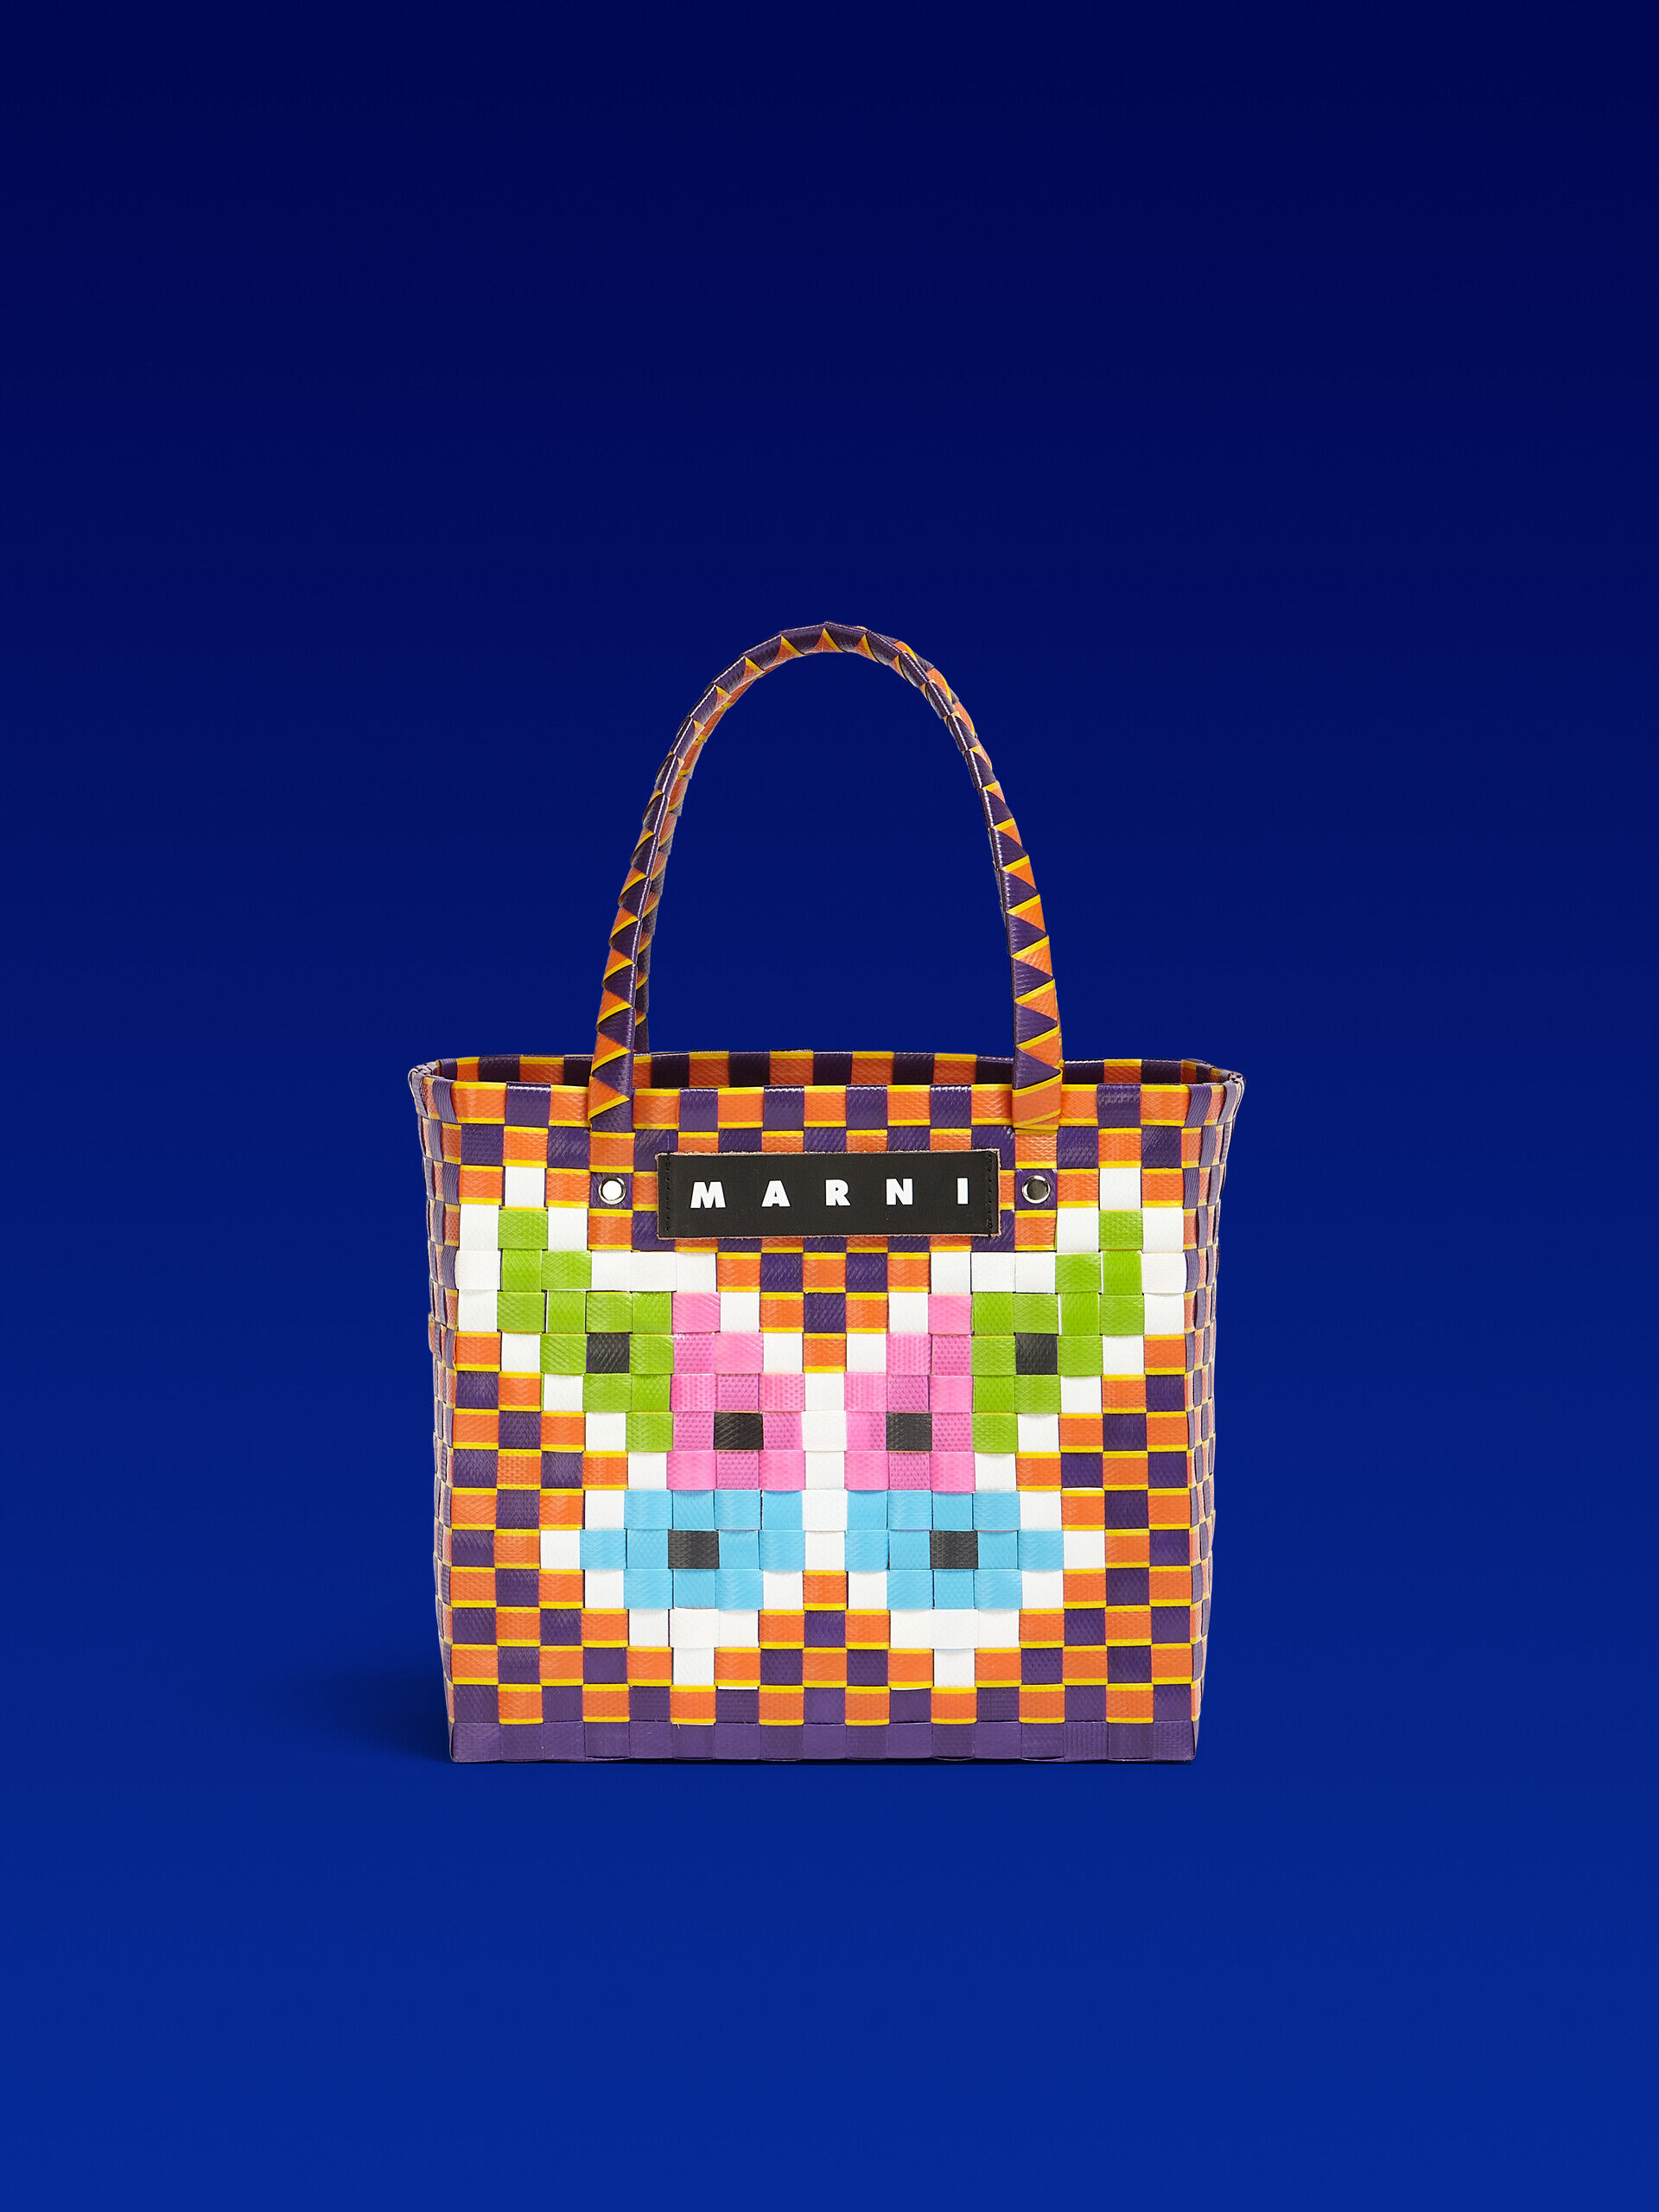 MARNI MARKET FLOWER MINI BASKET bag in orange butterfly motif | Marni